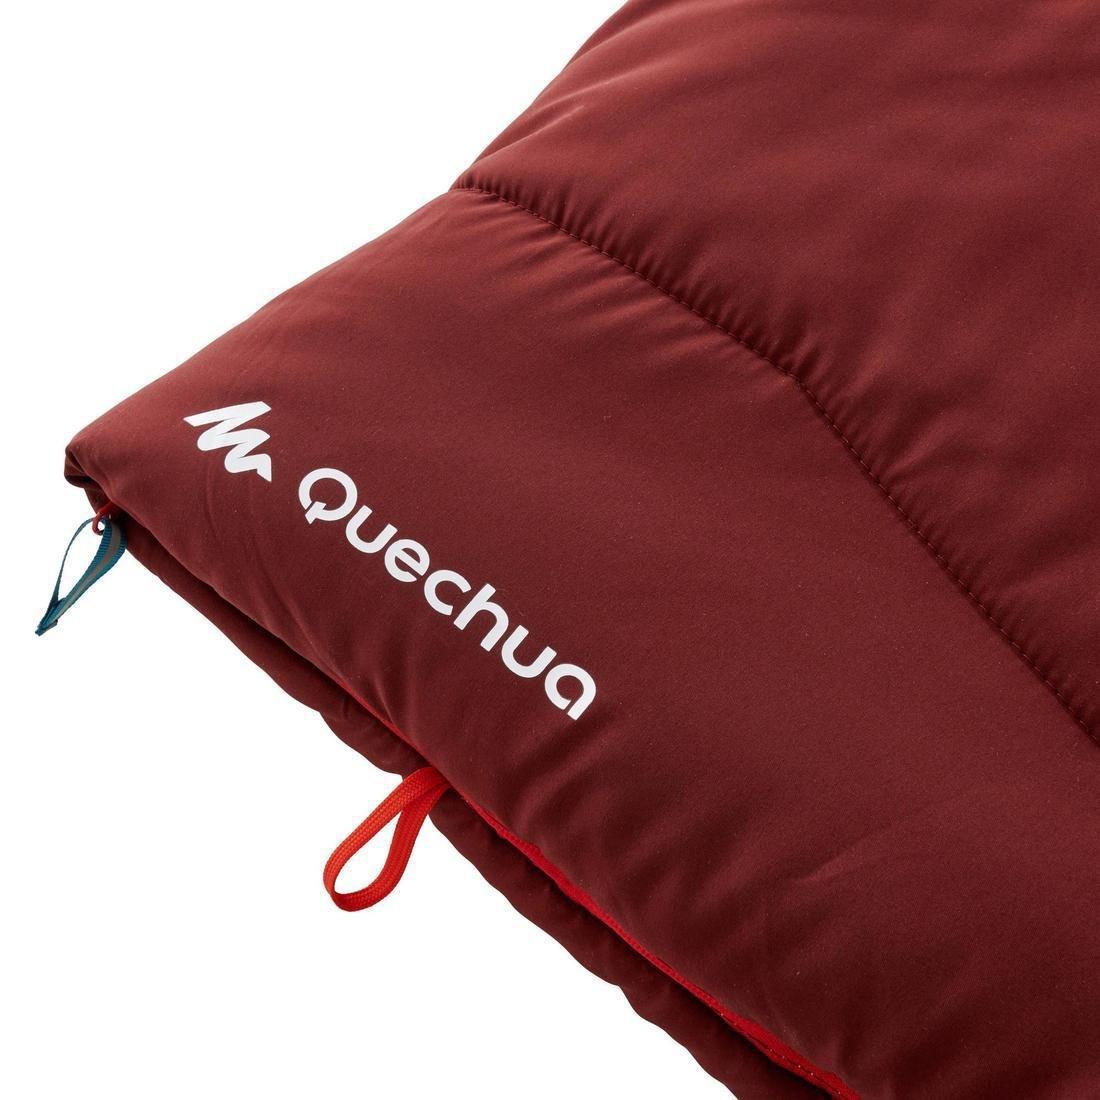 QUECHUA - Cotton Camping Sleeping Bag, Brown